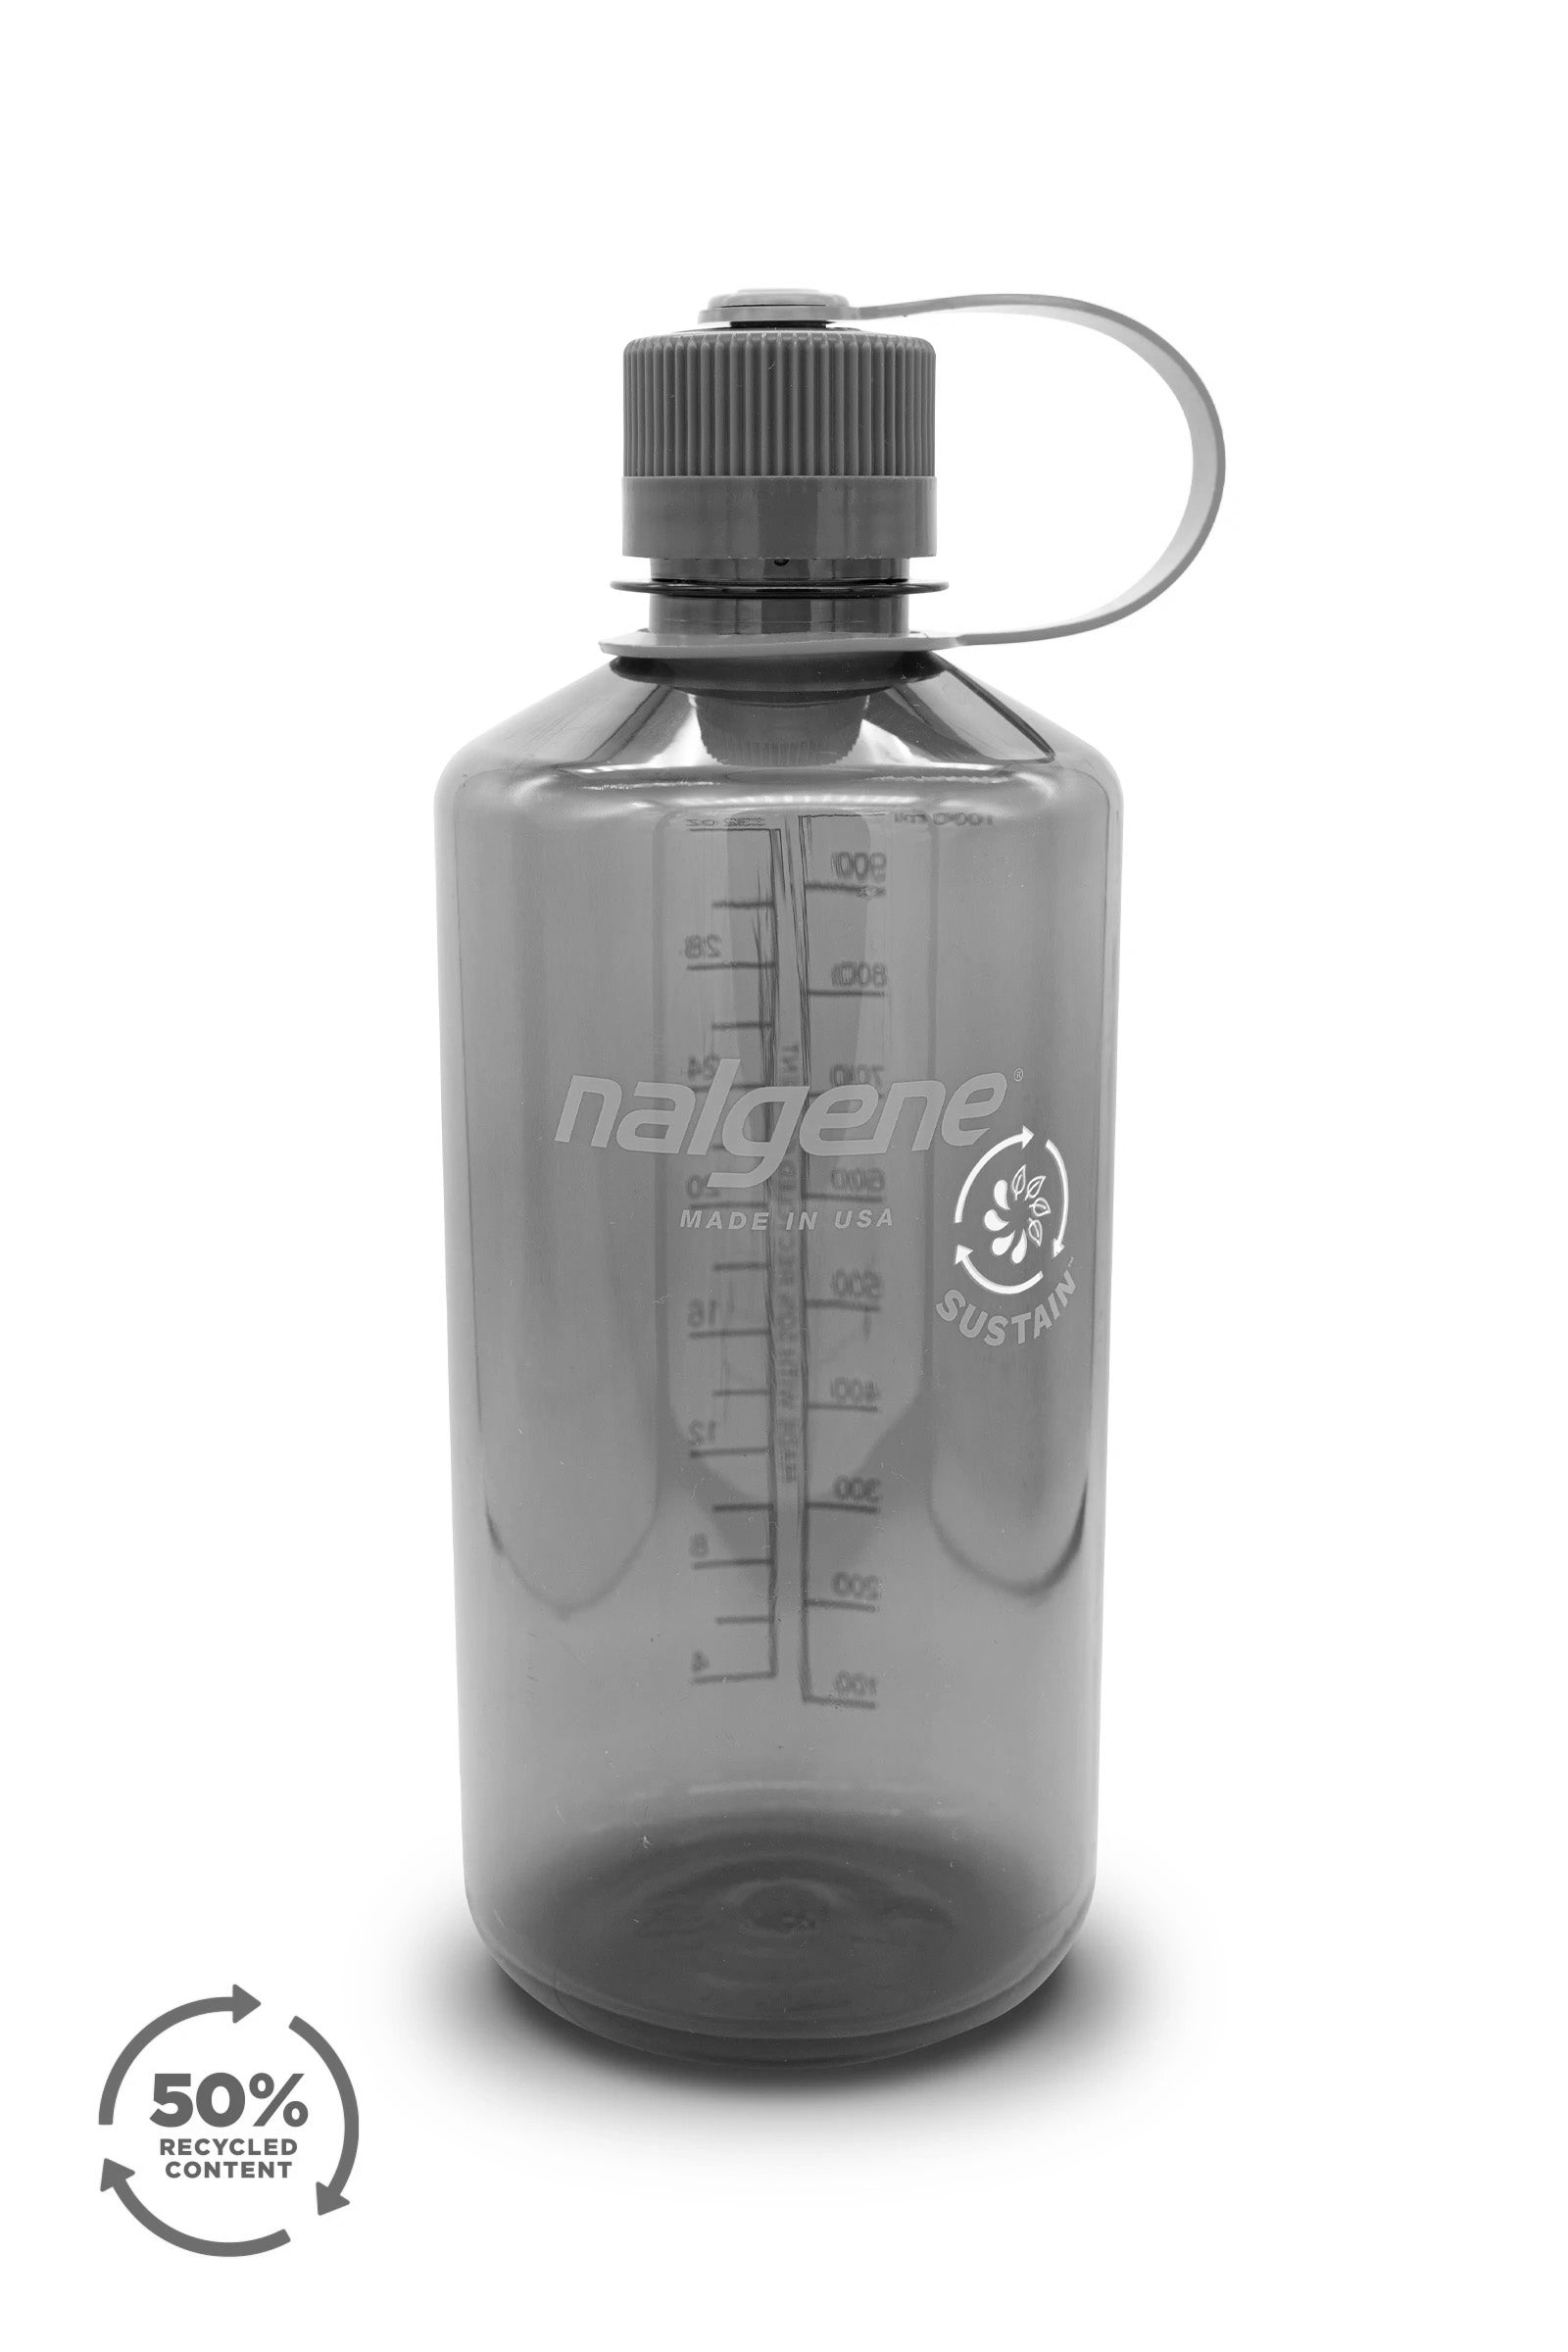 Nalgene Recycled Grip 'n Gulp Kids Water Bottle, USA Made